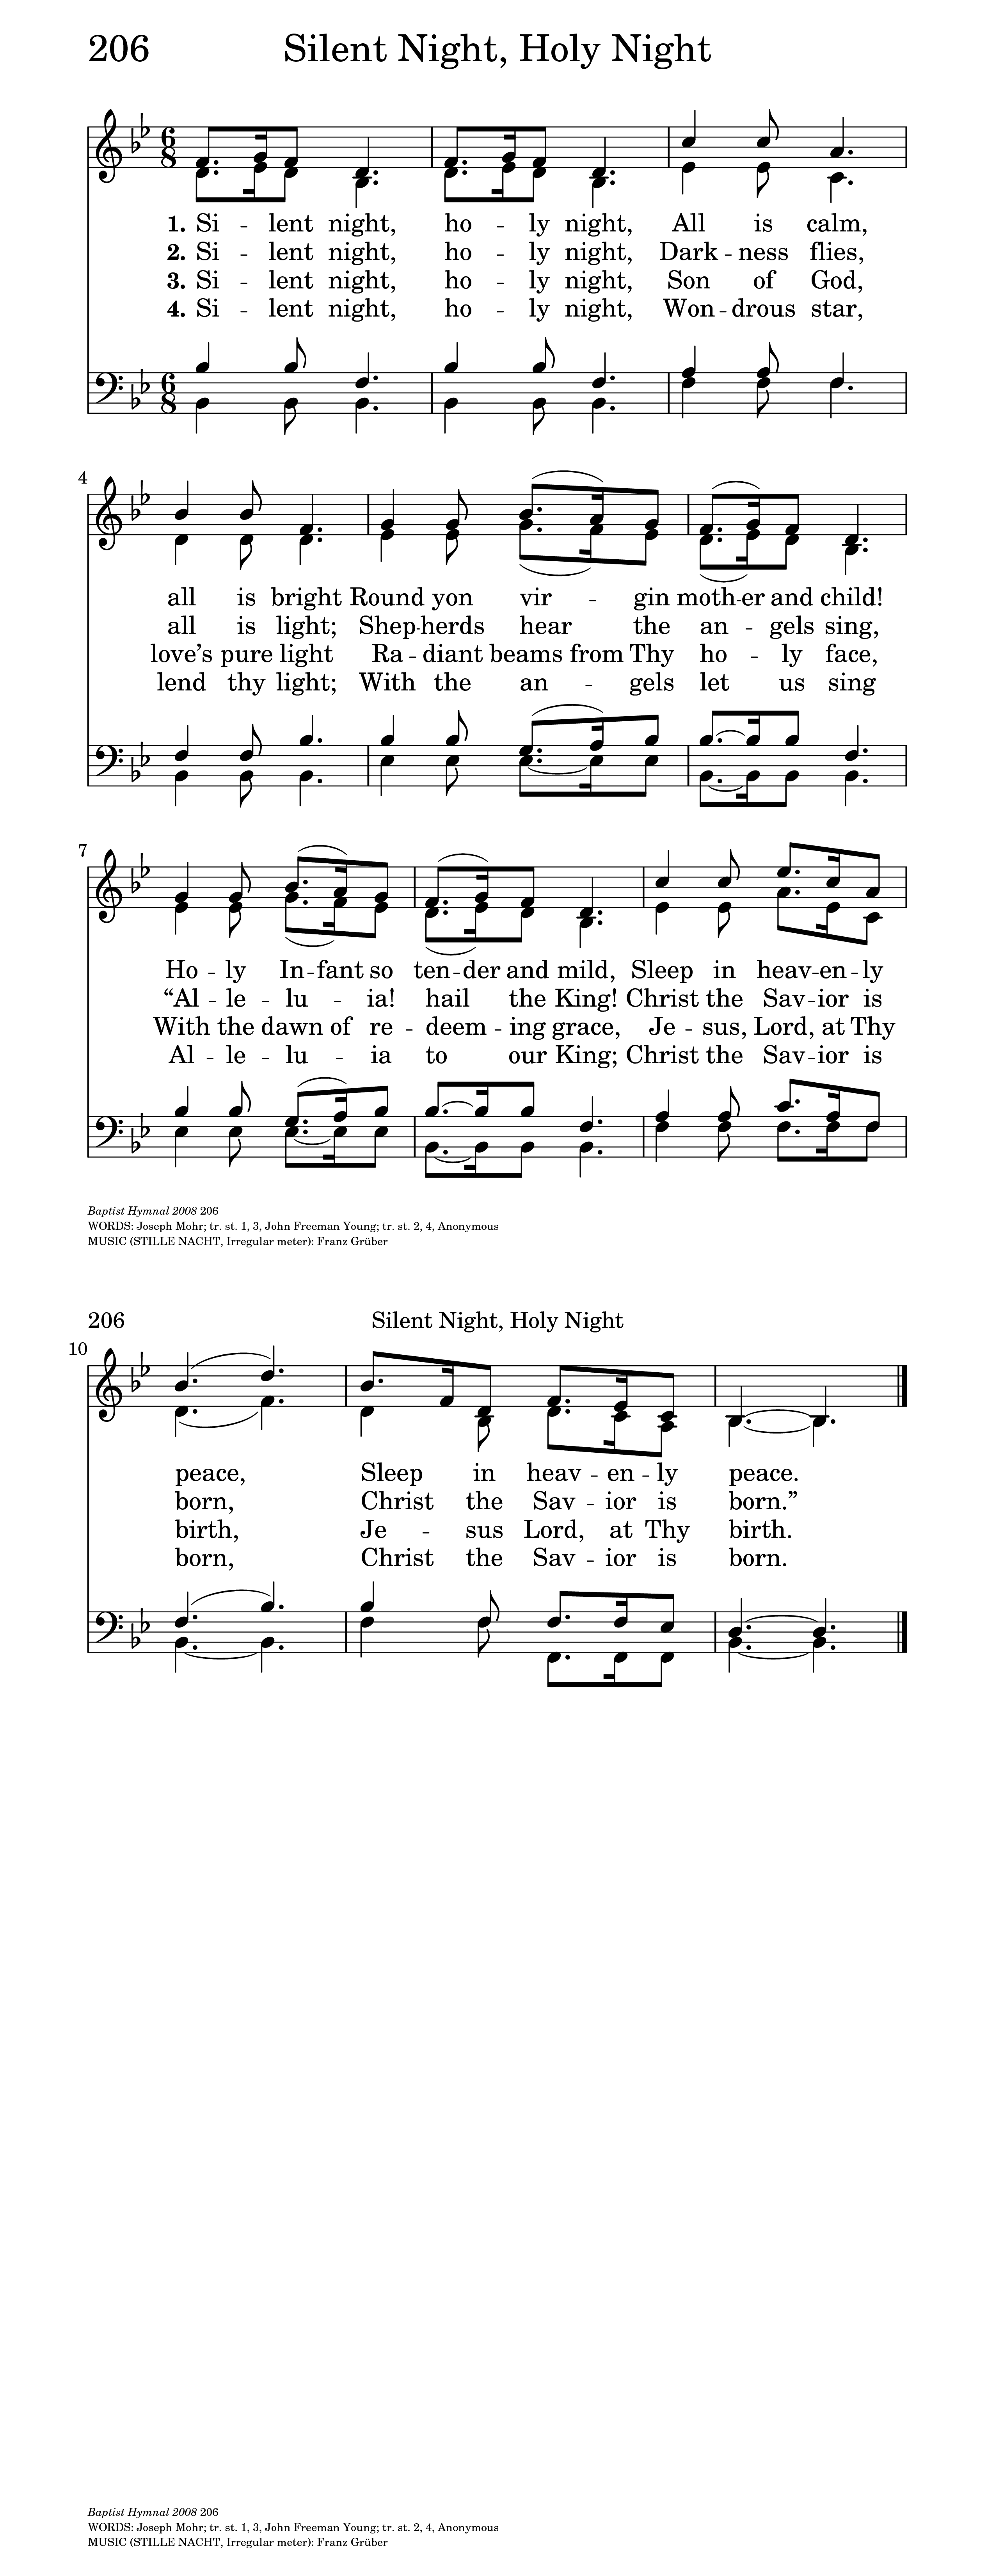 O Holy Night' Lyrics: Bible Meaning and Author's Story